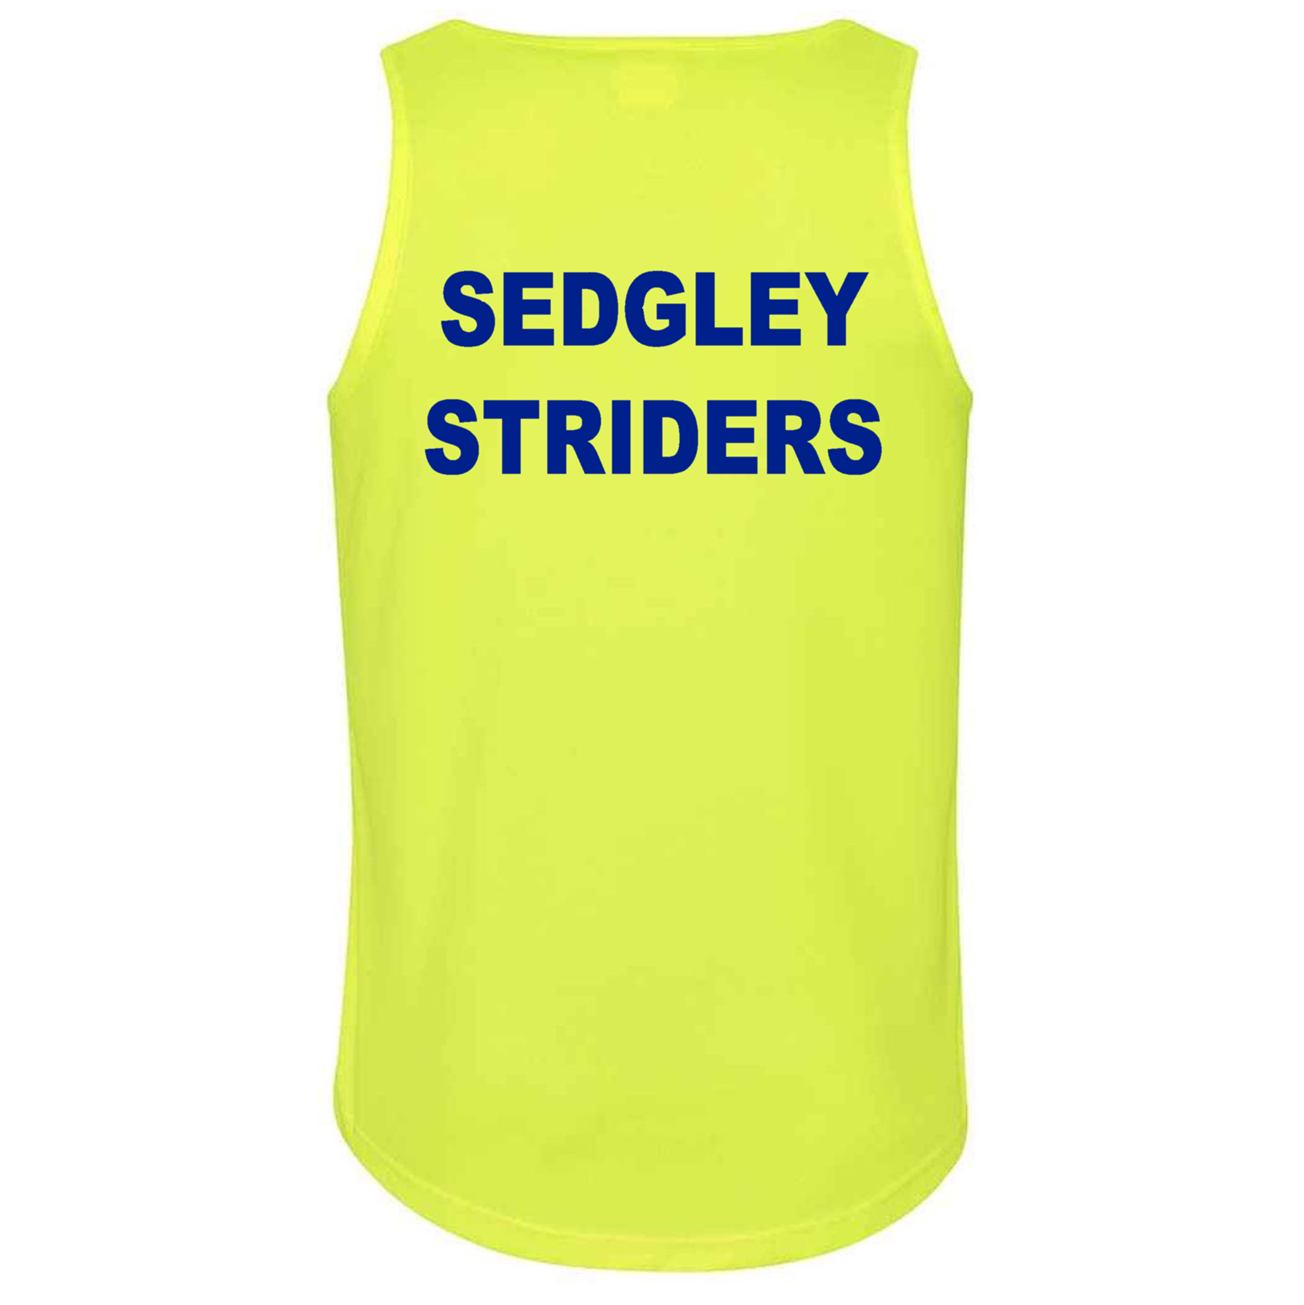 Sedgley Striders - Men's Racerback Vest [JC007]